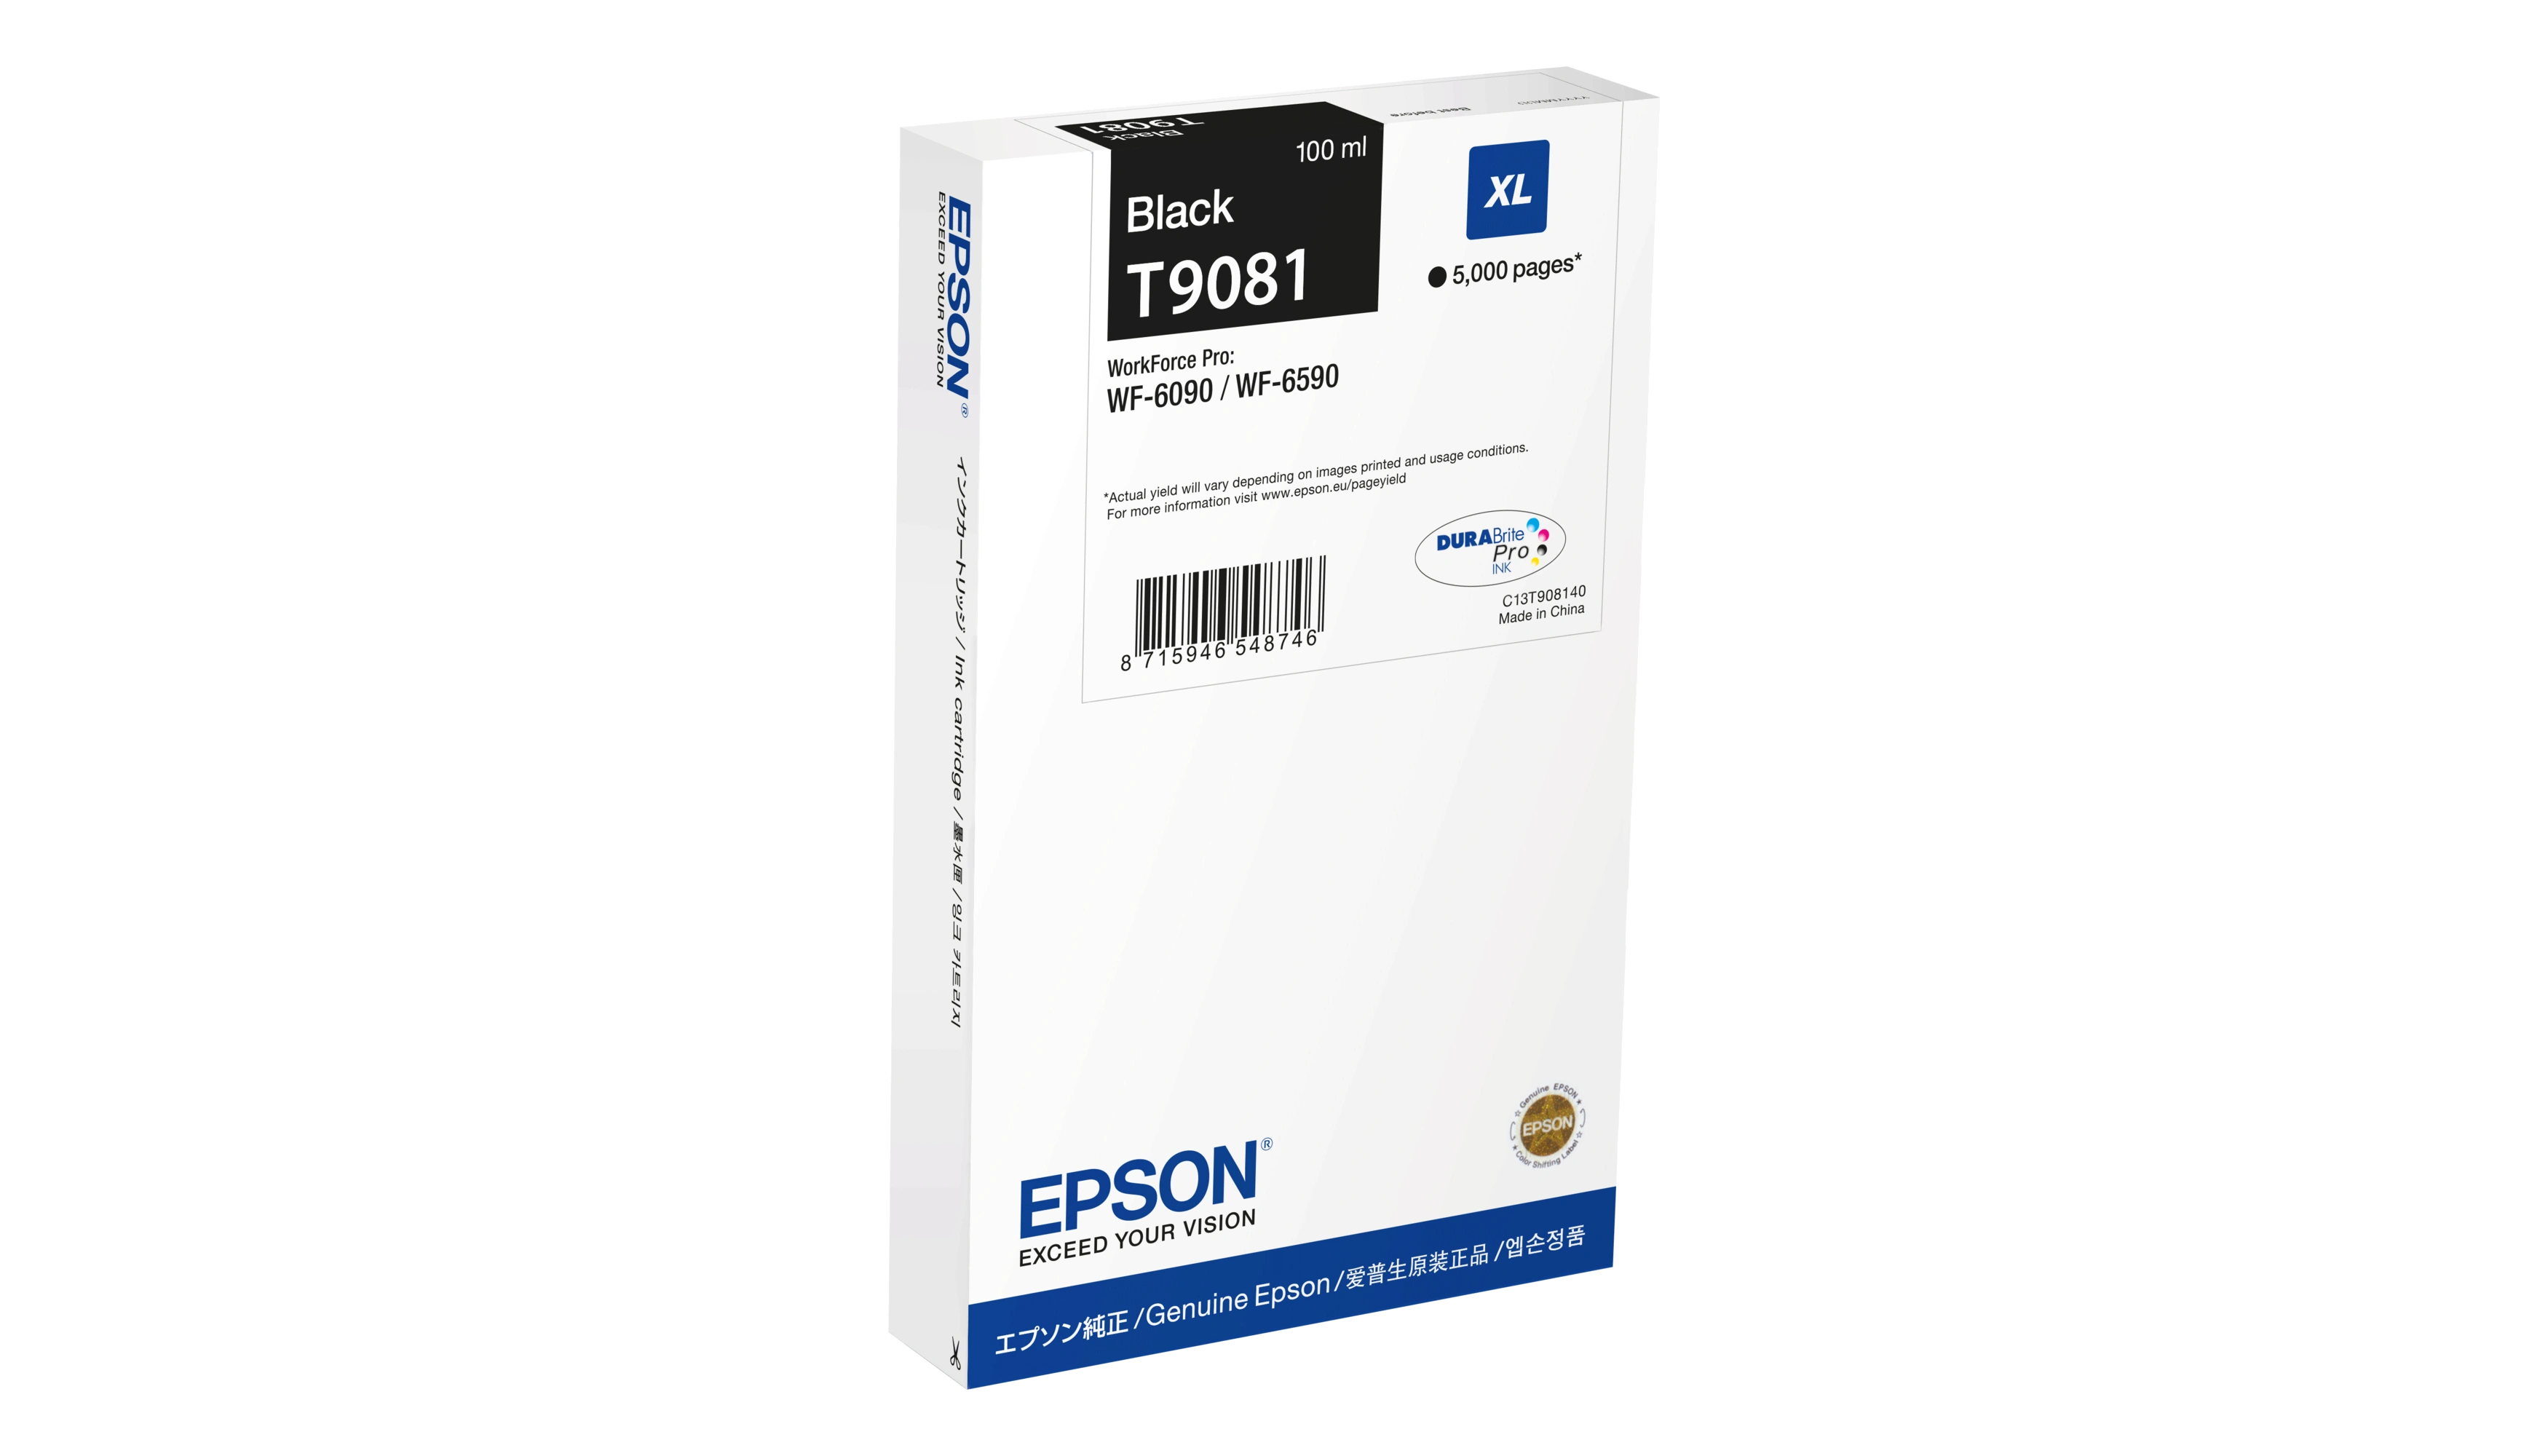 EPSON Tintenpatrone T9081 ca. 5.000 Seiten 100 ml schwarz